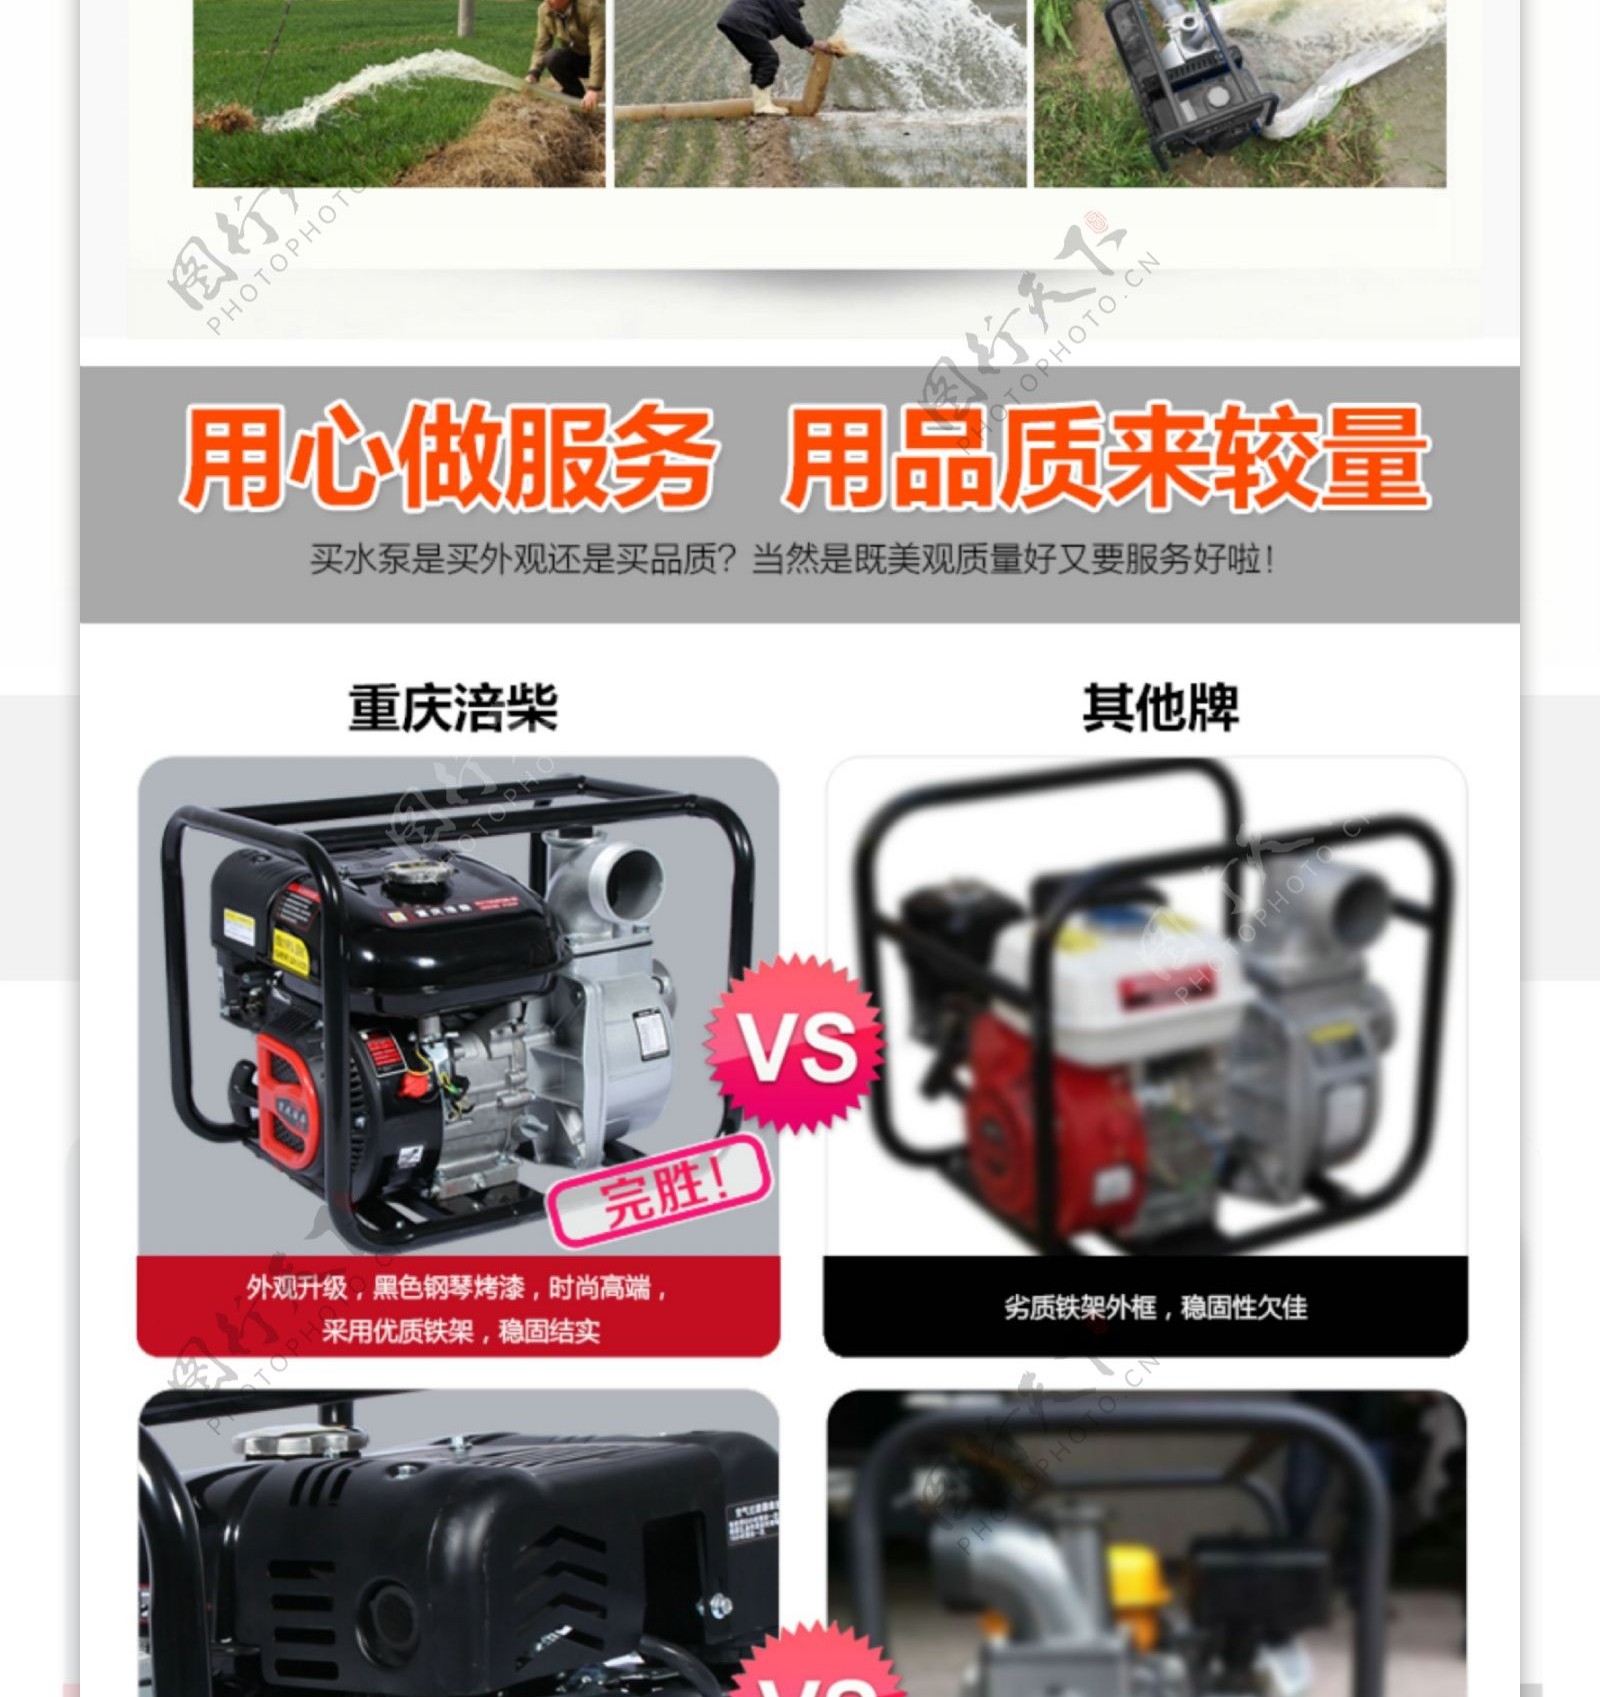 重庆涪柴汽油机水泵天猫详情页